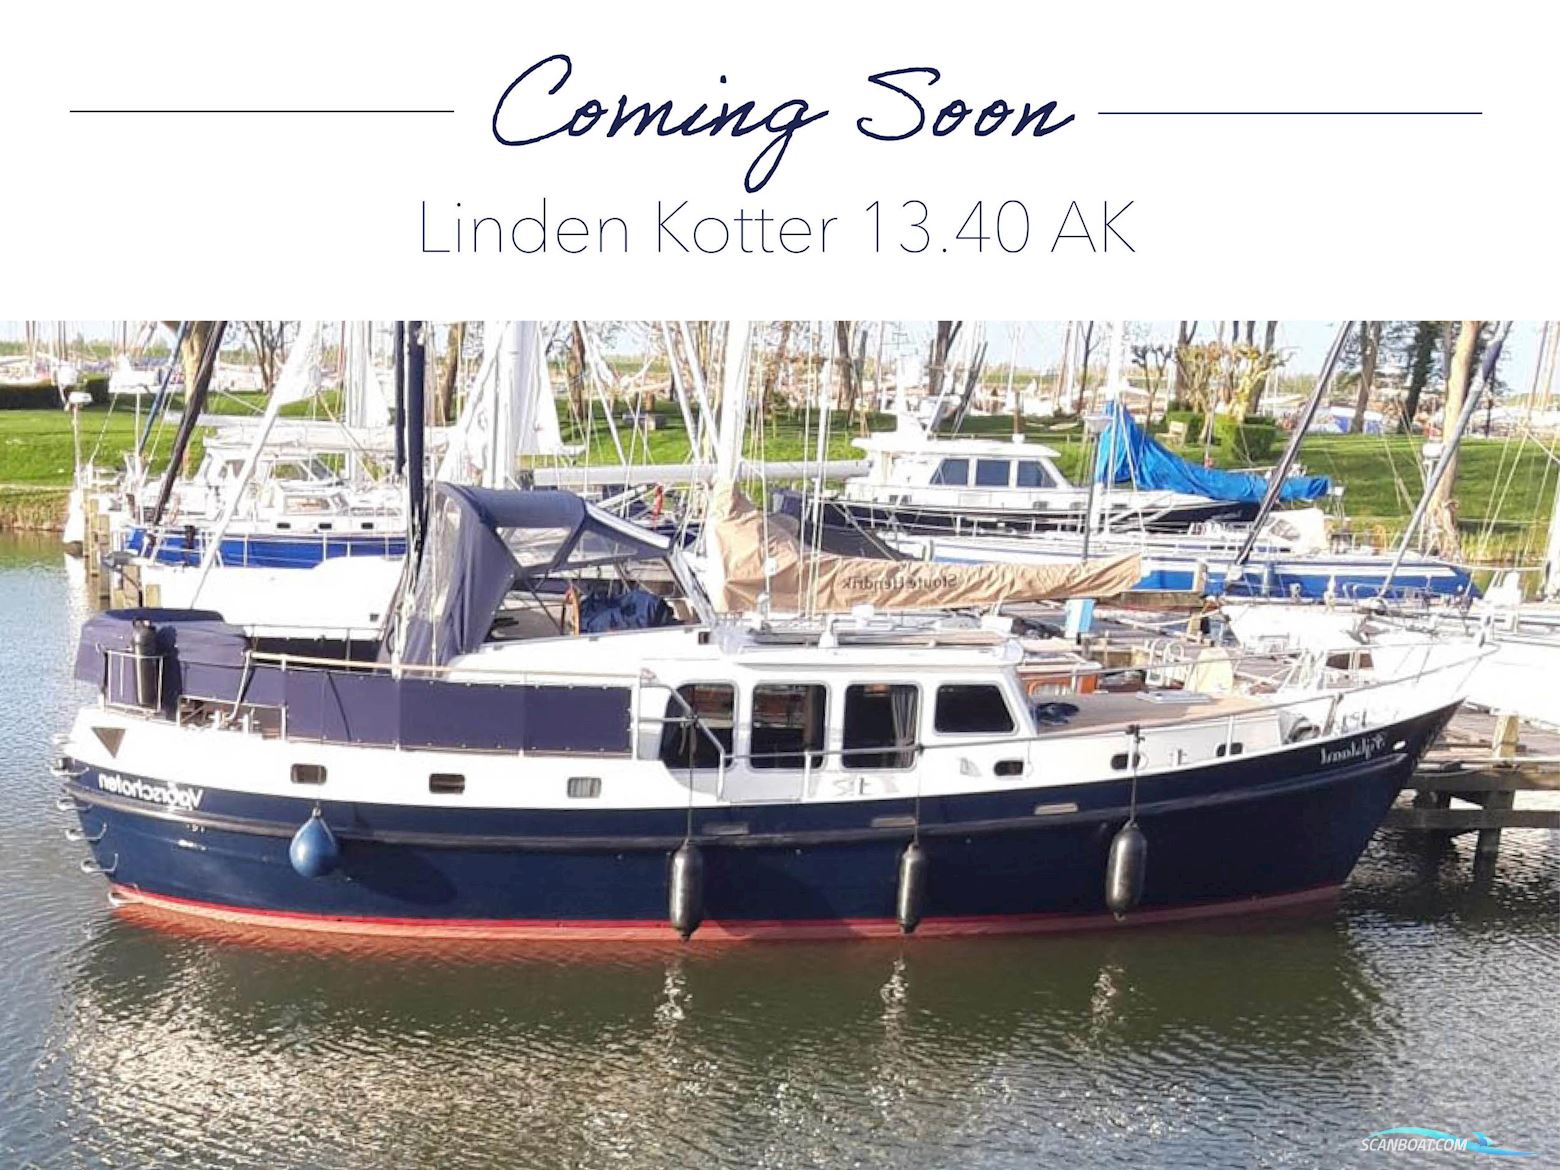 Linden Kotter 13.70 AK Motor boat 1999, with Vetus Deutz engine, The Netherlands